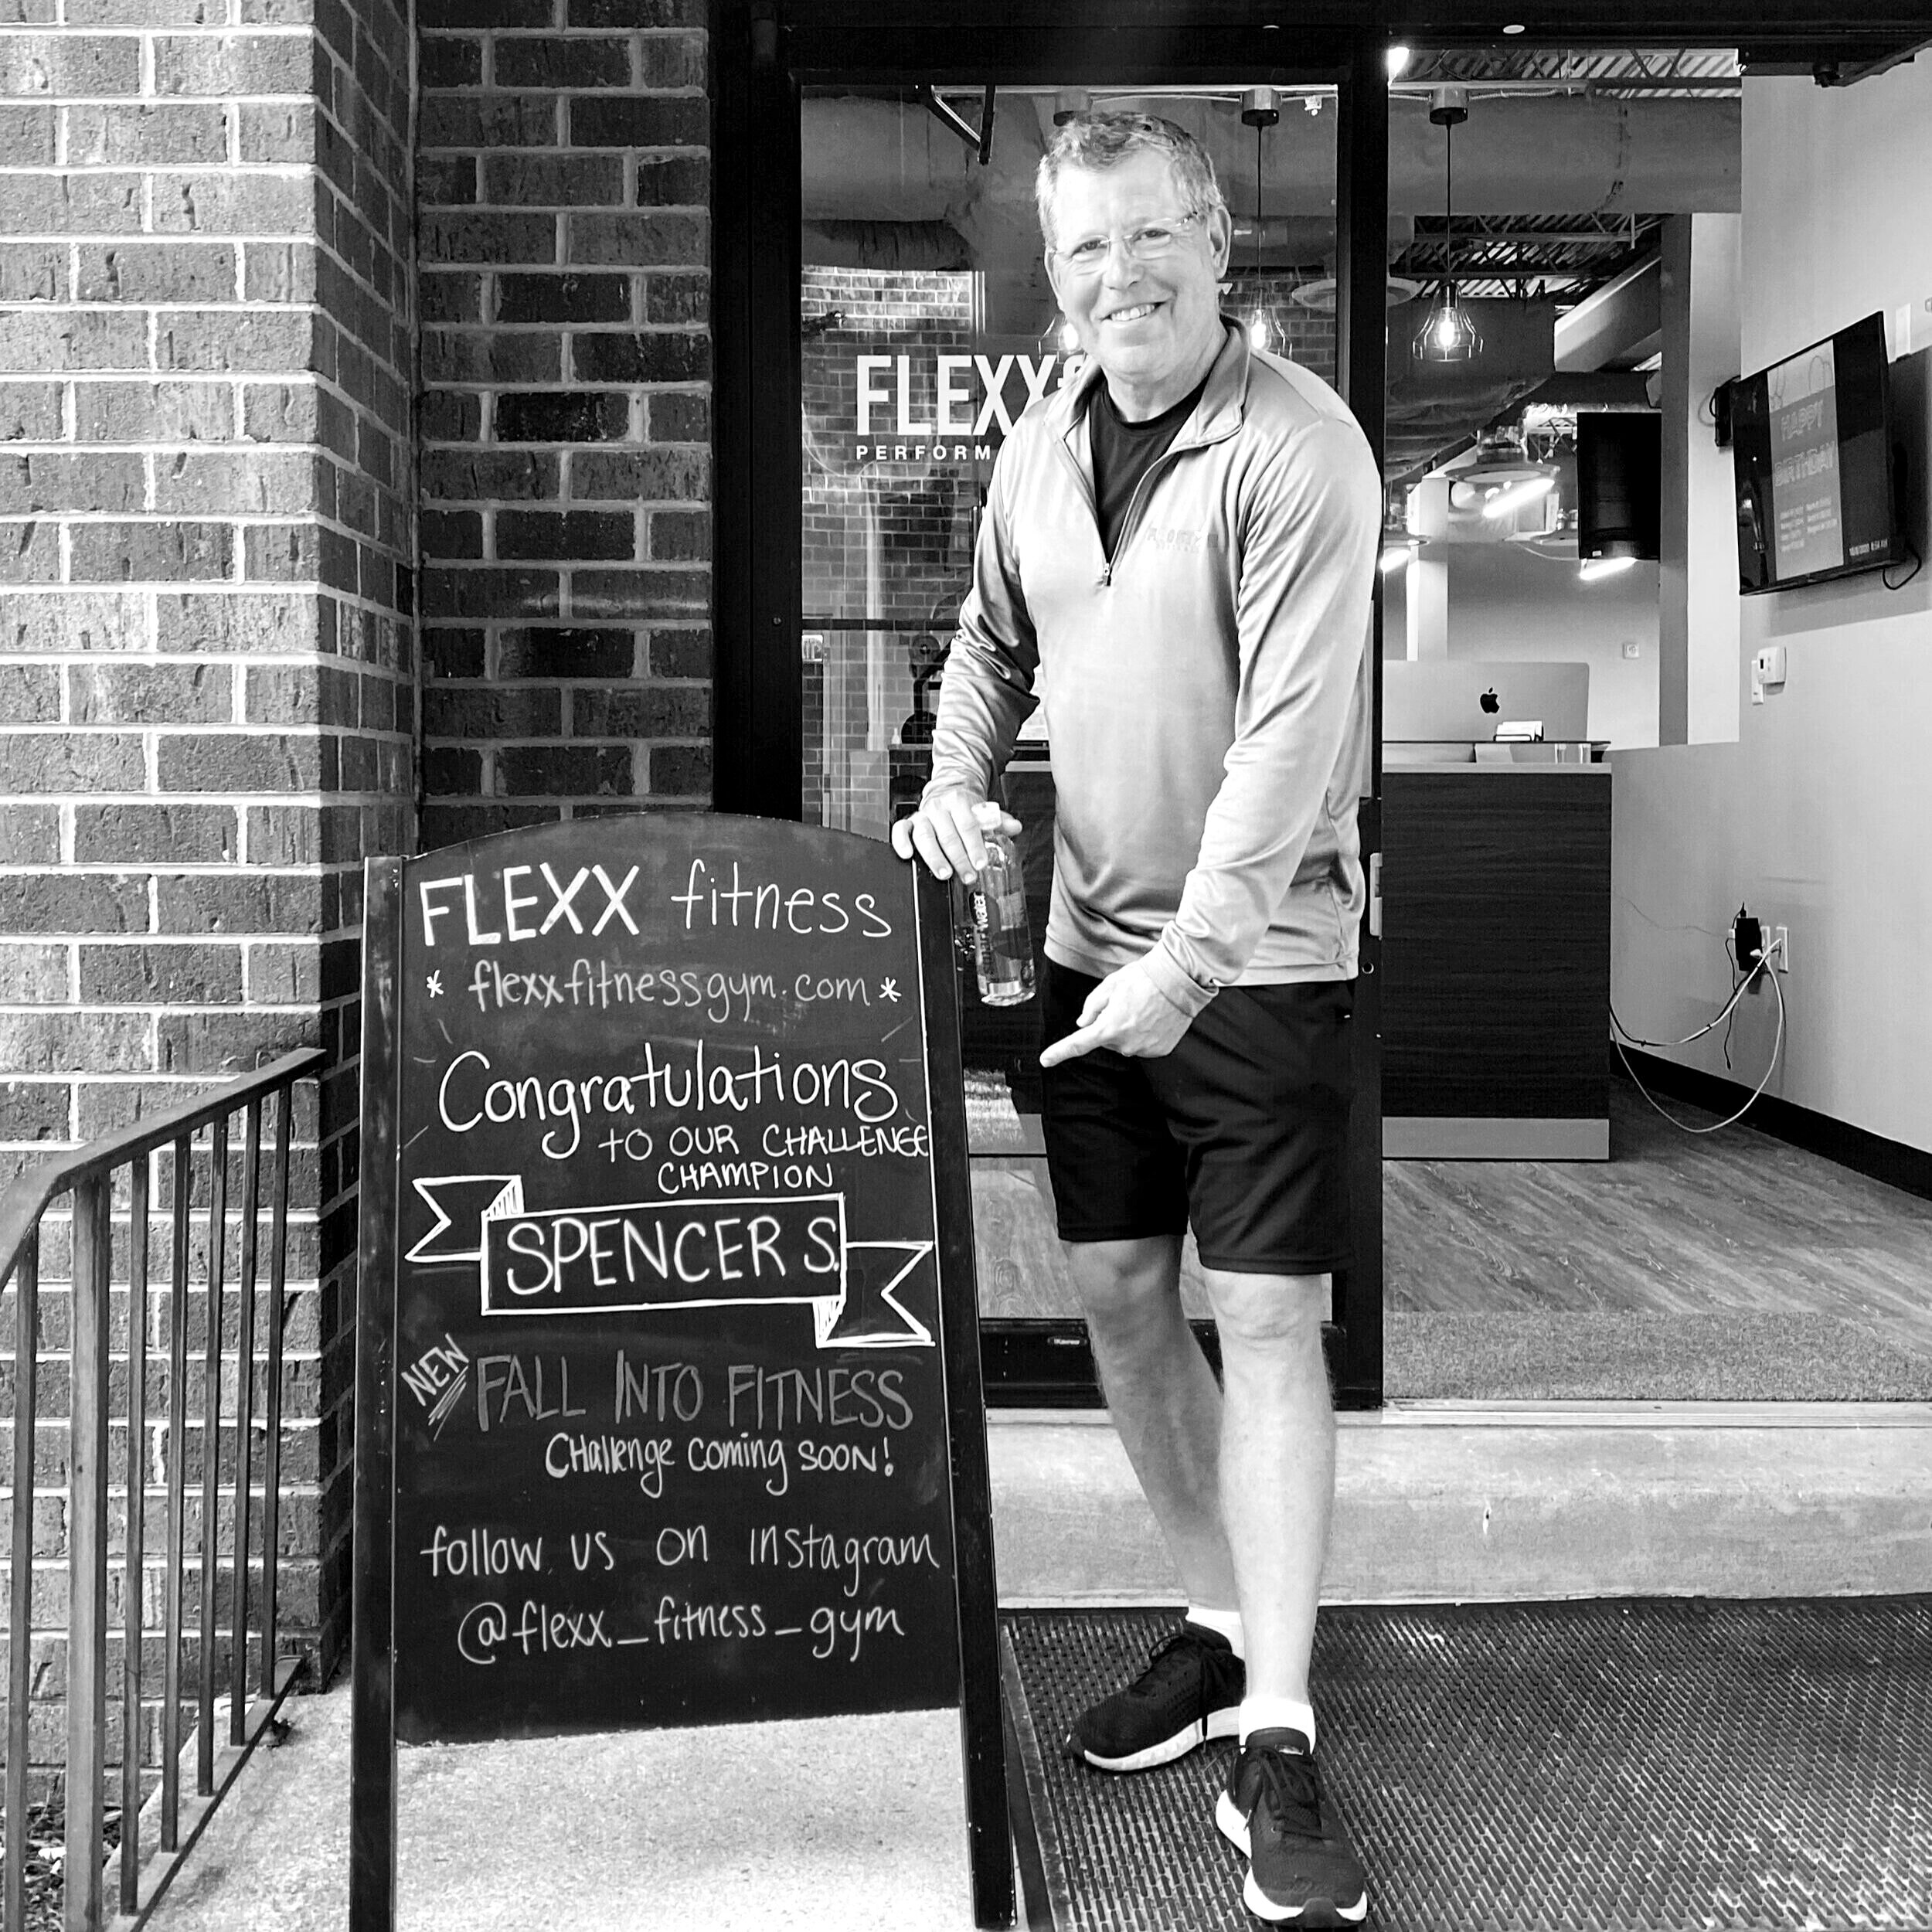 FLEXX Fitness